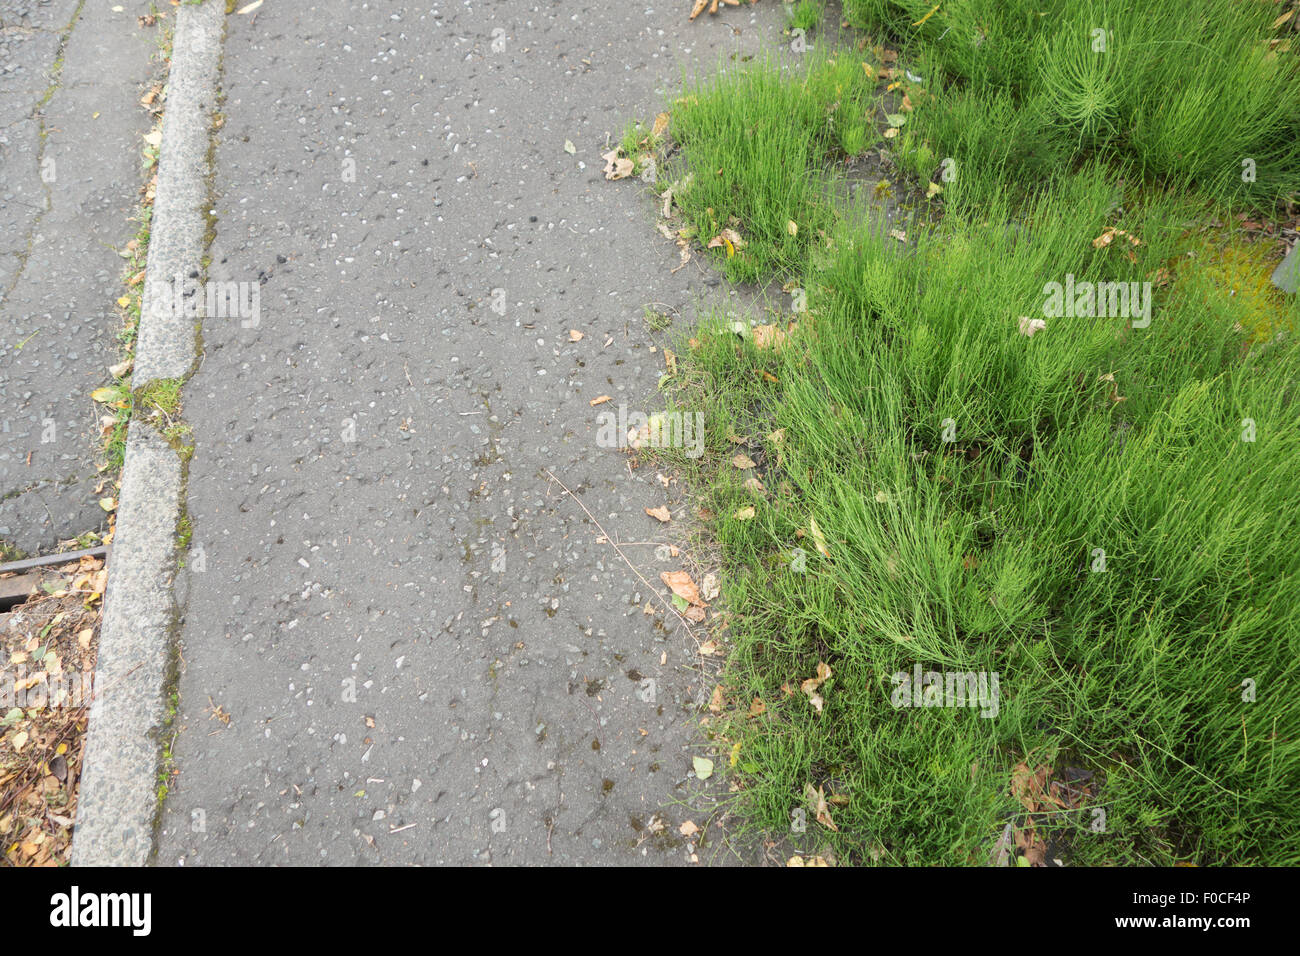 La prêle des champs (Equisetum arvense) - une espèce envahissante et difficile à contrôler les mauvaises herbes vivaces qui poussent à travers un sentier public Banque D'Images